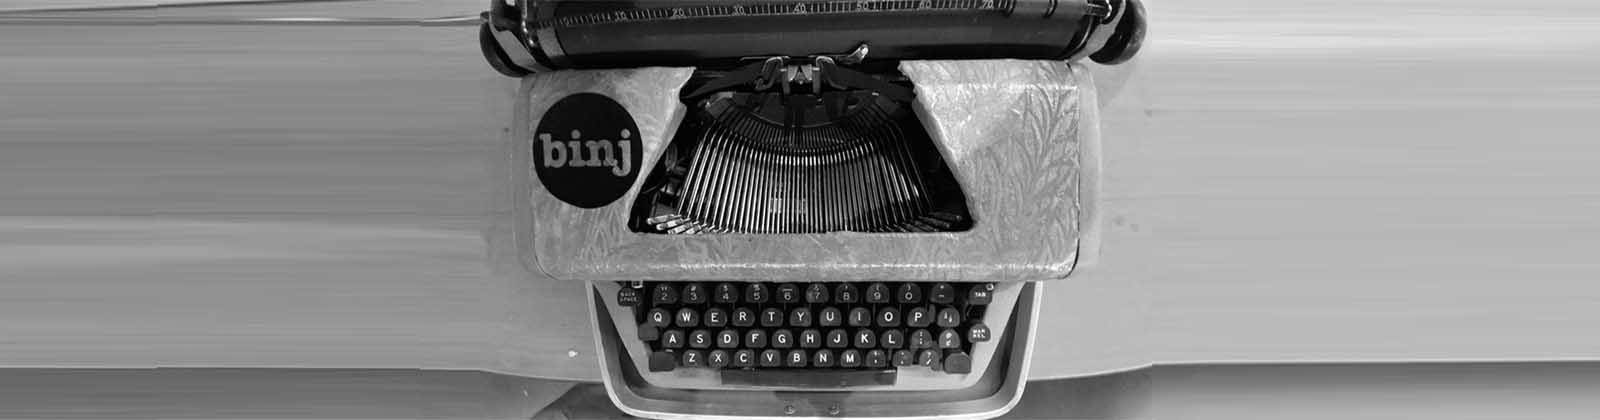 binj typewriter